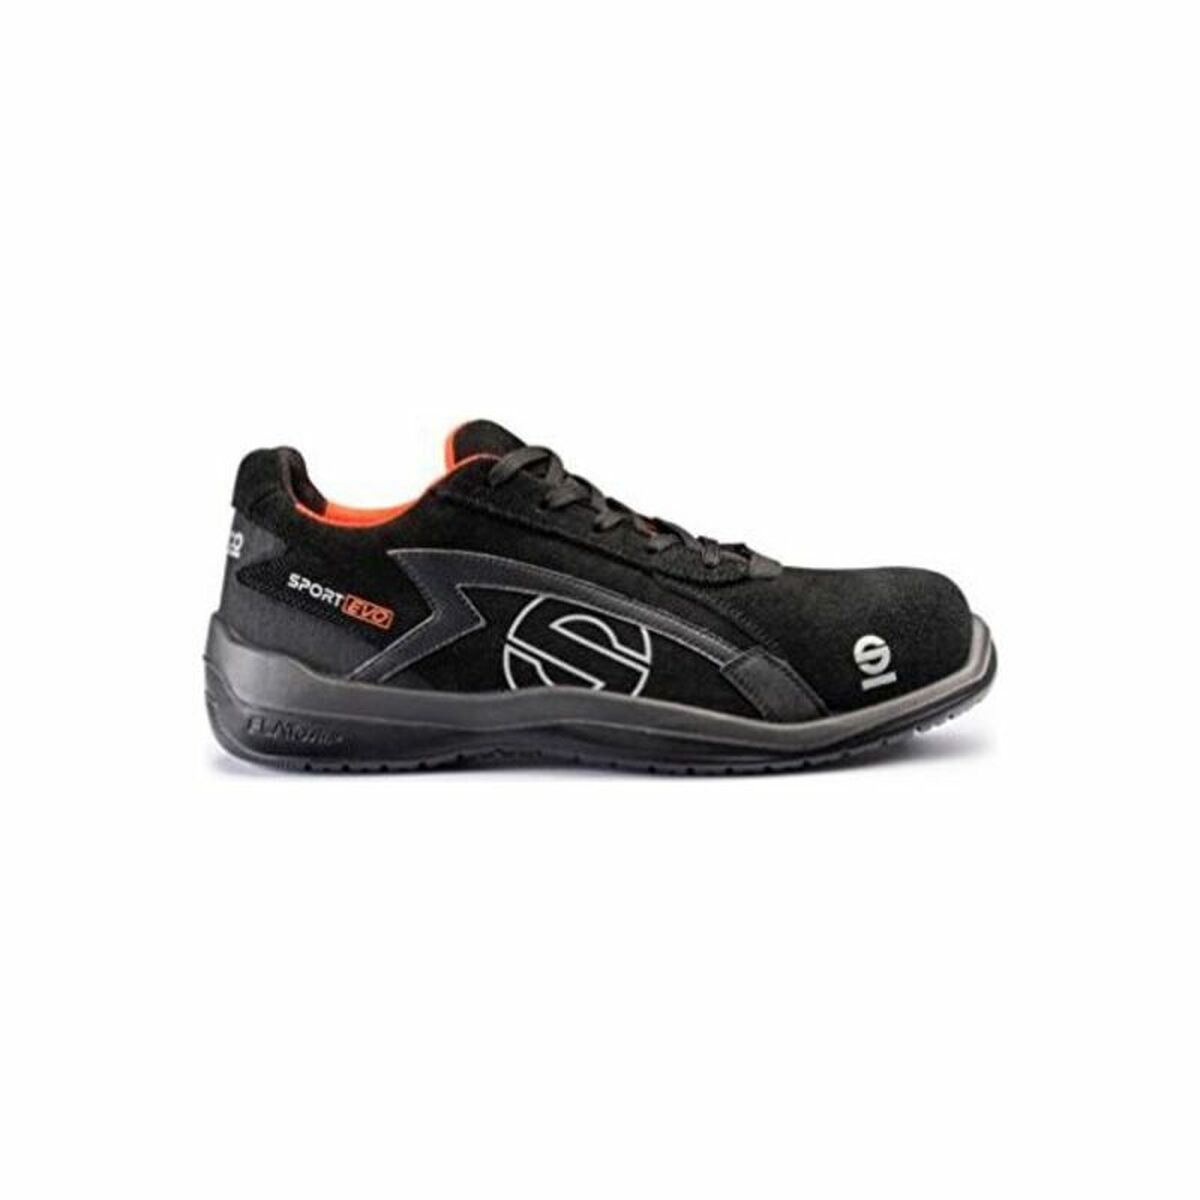 Kaufe Sicherheits-Schuhe Sparco 0751646NRNR (Größe 46) Schwarz bei AWK Flagship um € 108.00